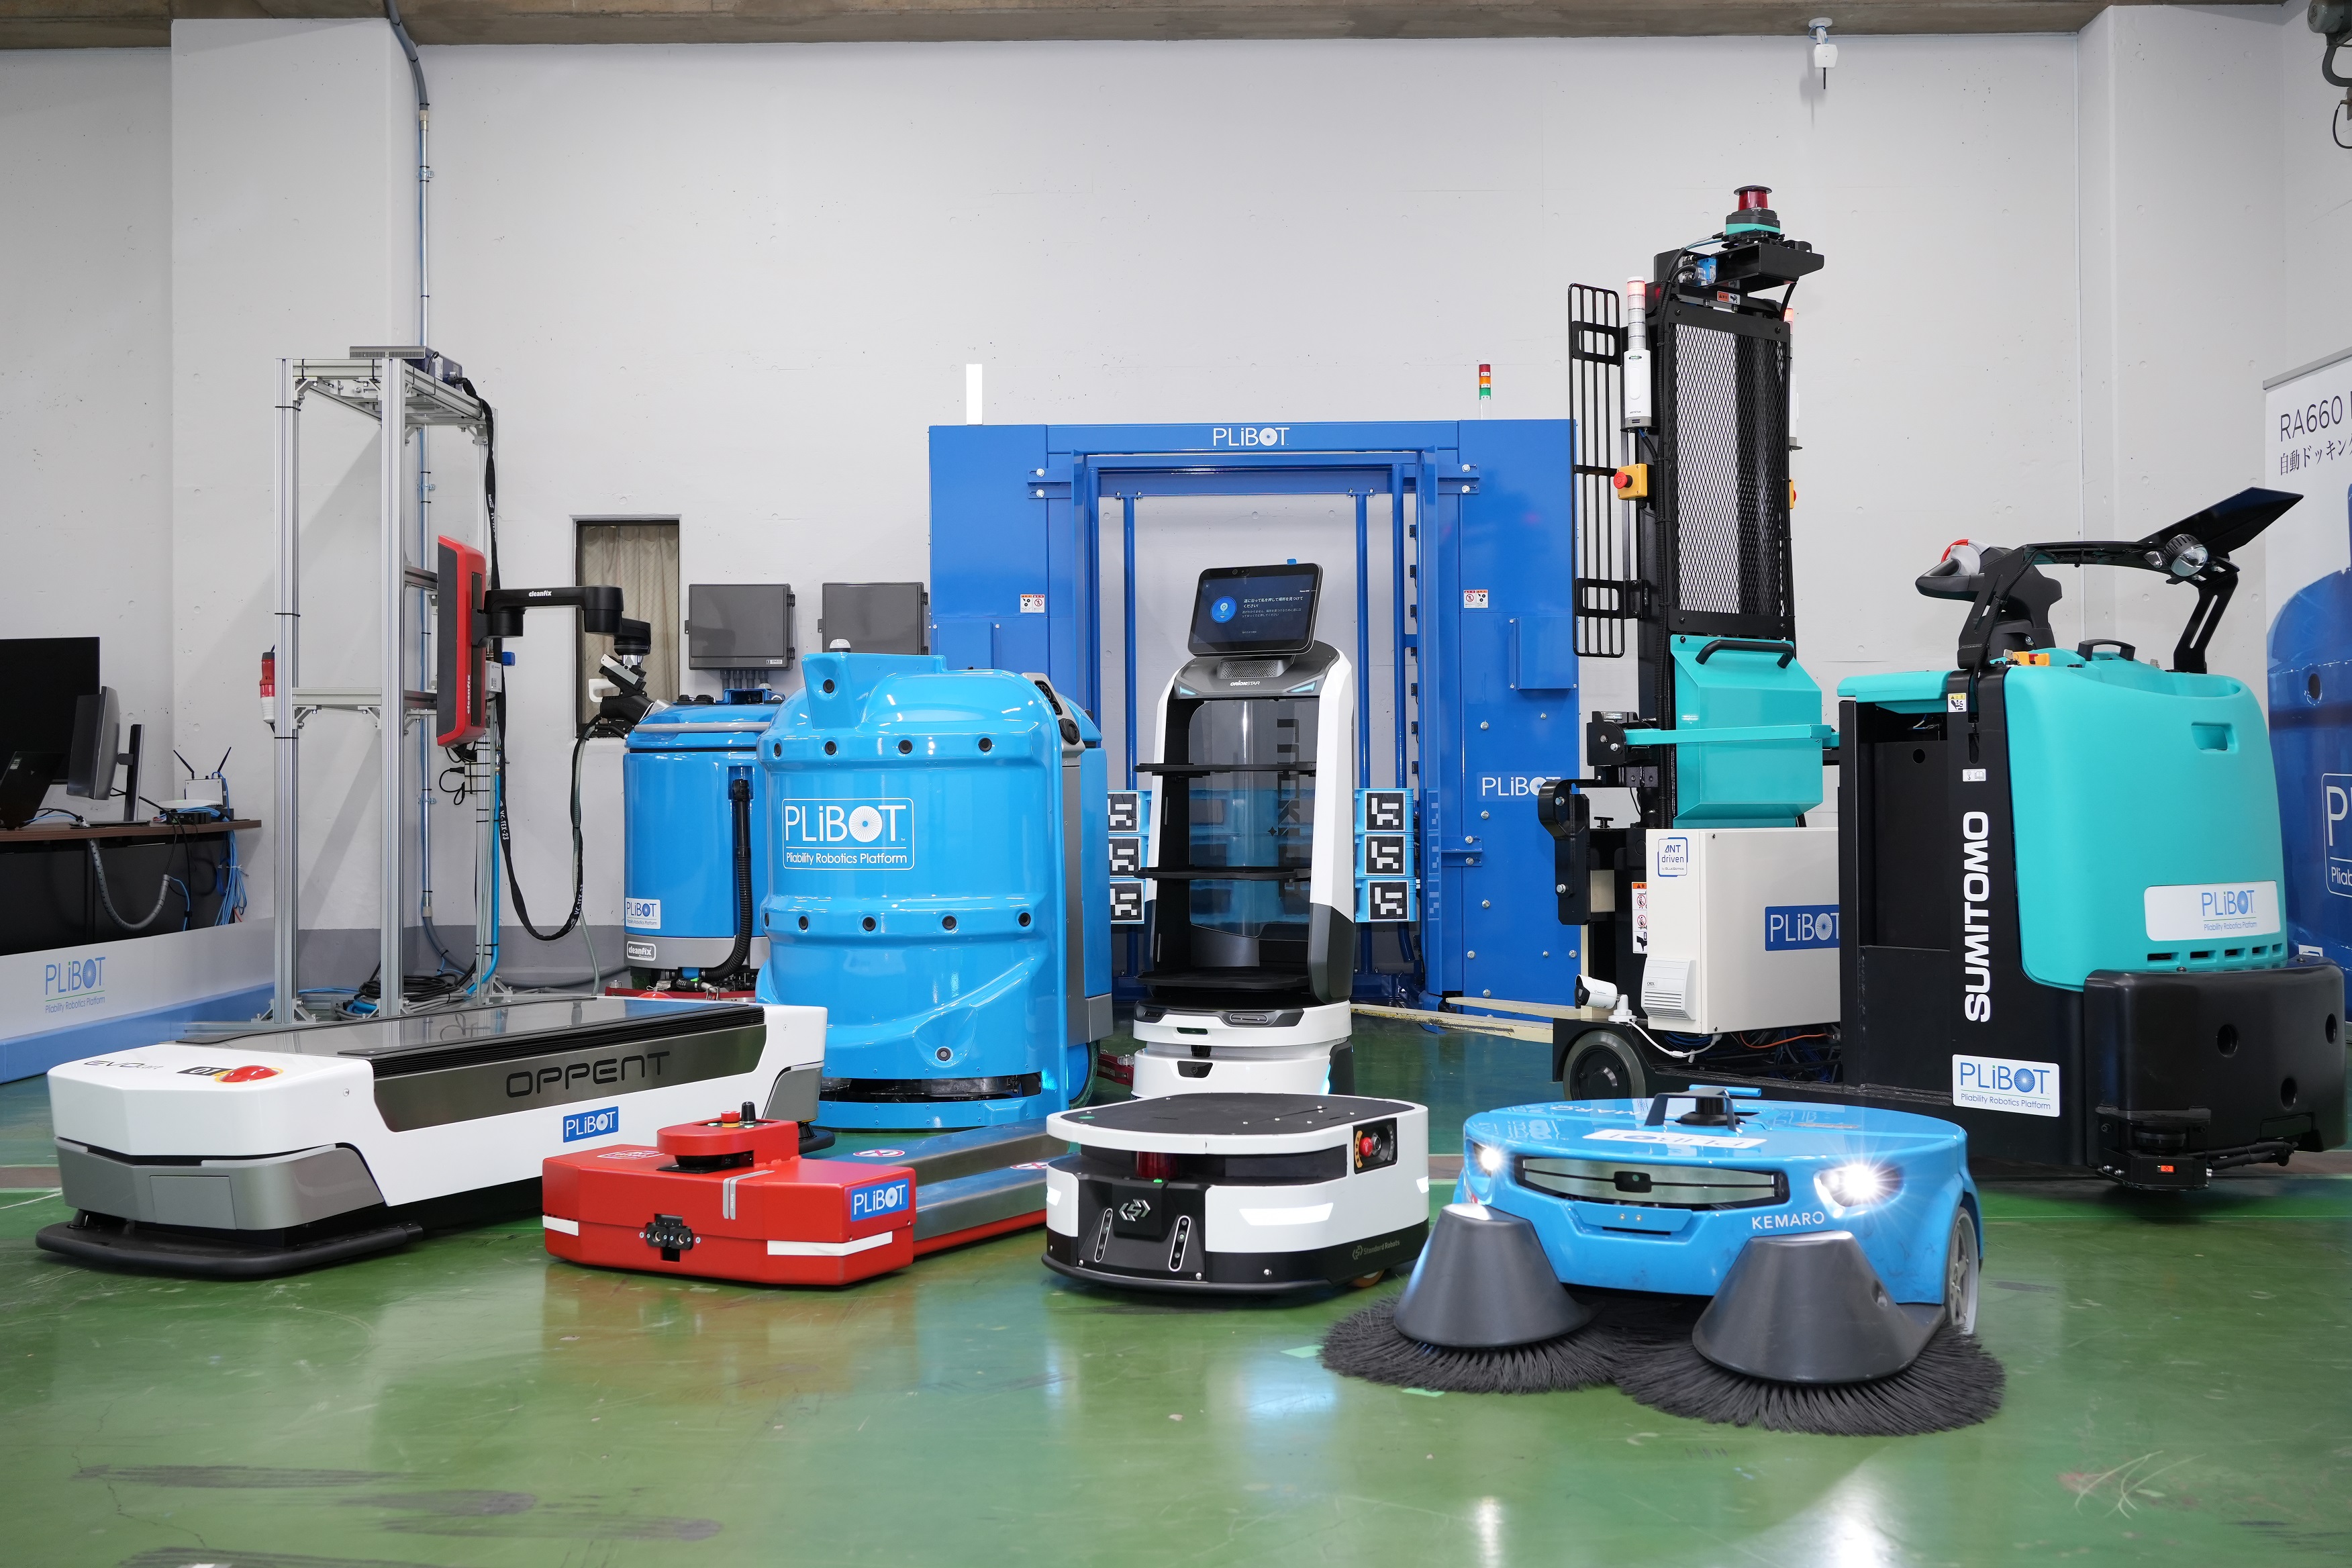 同社は、物品搬送ロボットや産業用清掃ロボット、フォークリフト型ロボットといった様々な用途のAMRと、導入先の工場や倉庫等のエレベーターや防火扉、機械設備等を連携している。